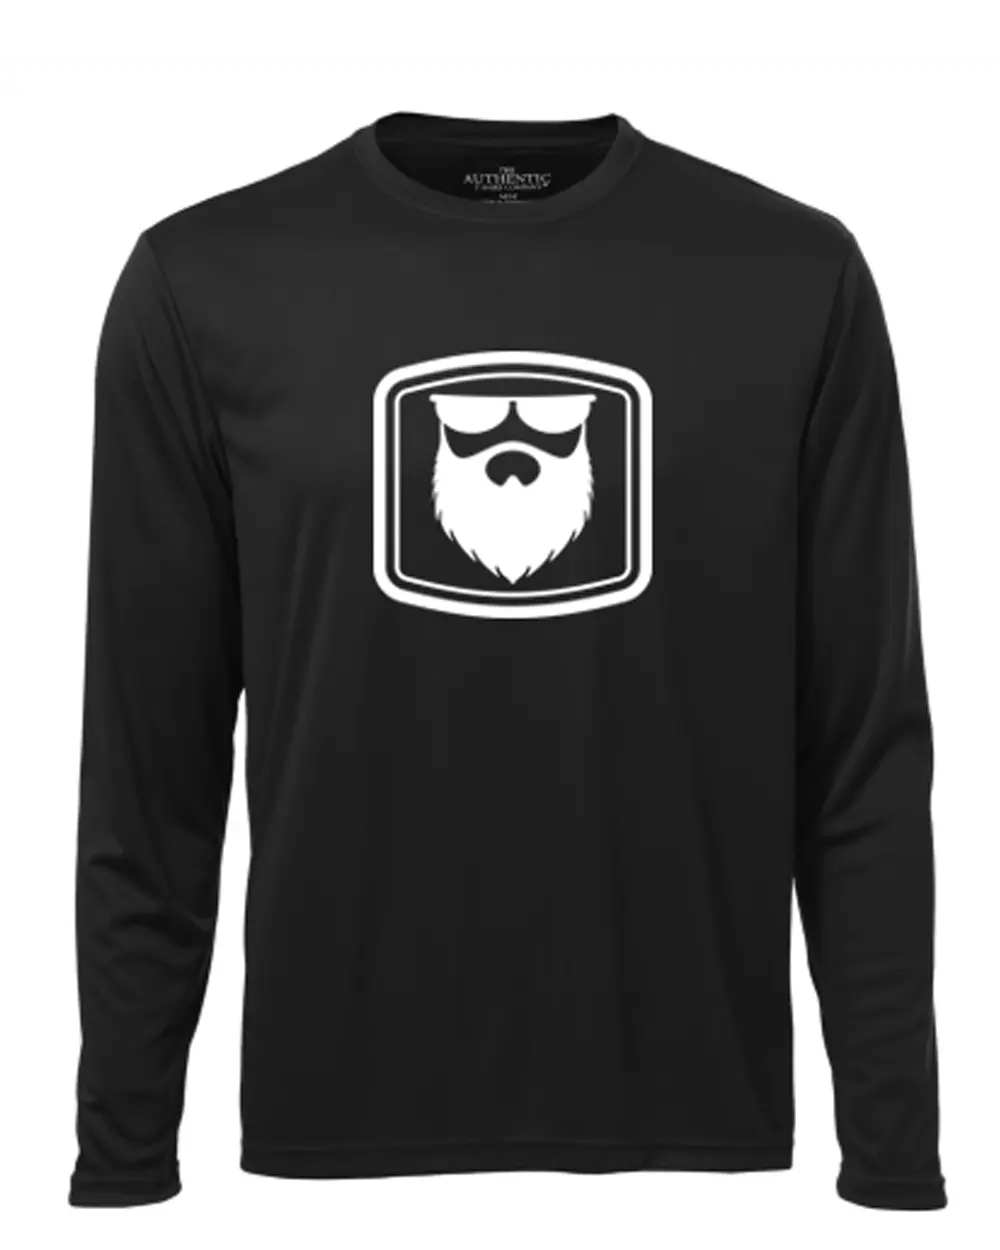 THE OG BEARD 2.0 Black Long Sleeve Shirt